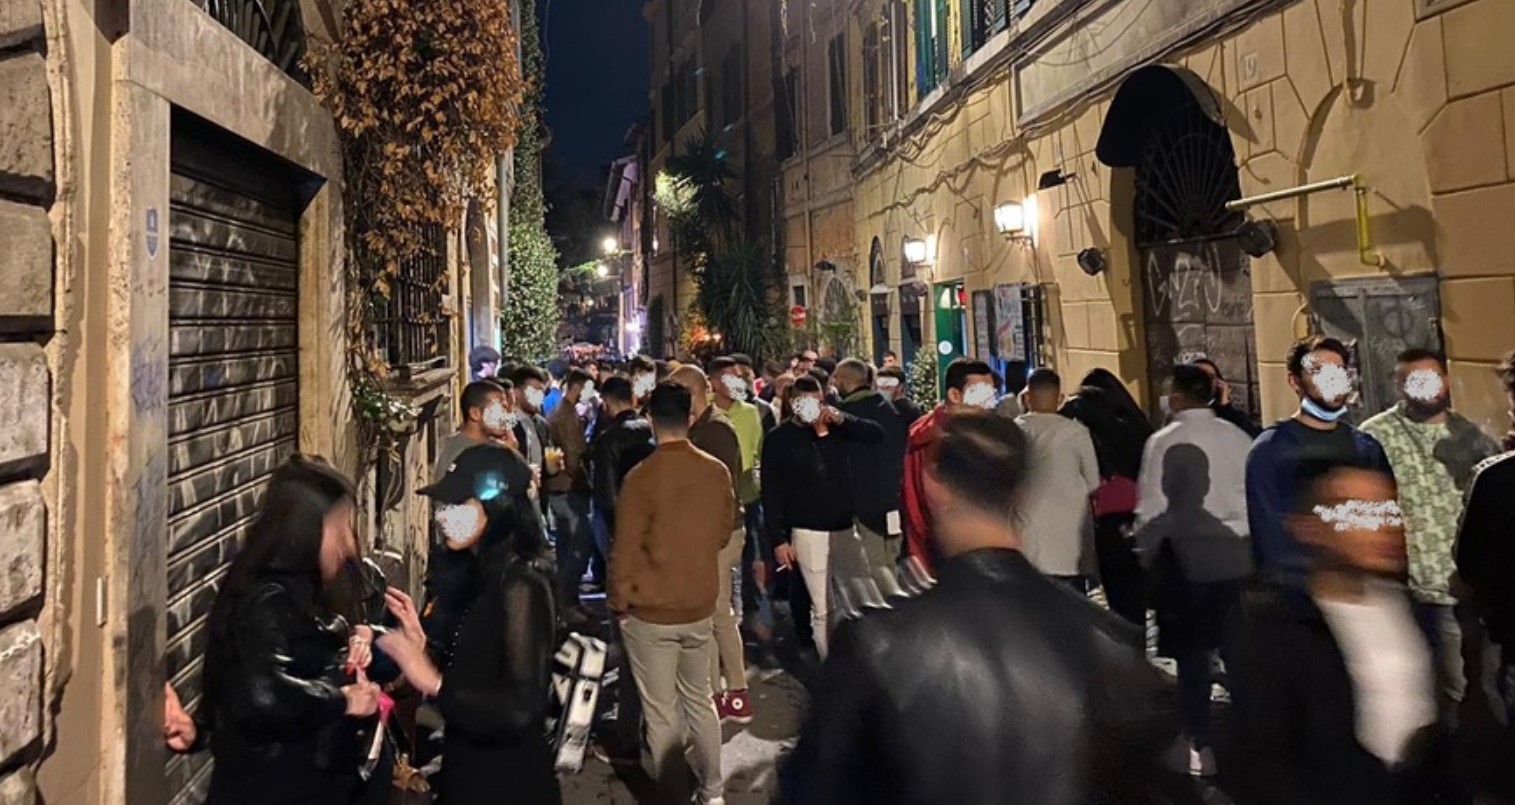 Ragazzi prendono a calci in faccia un senzatetto, la violenza nel cuore di Roma